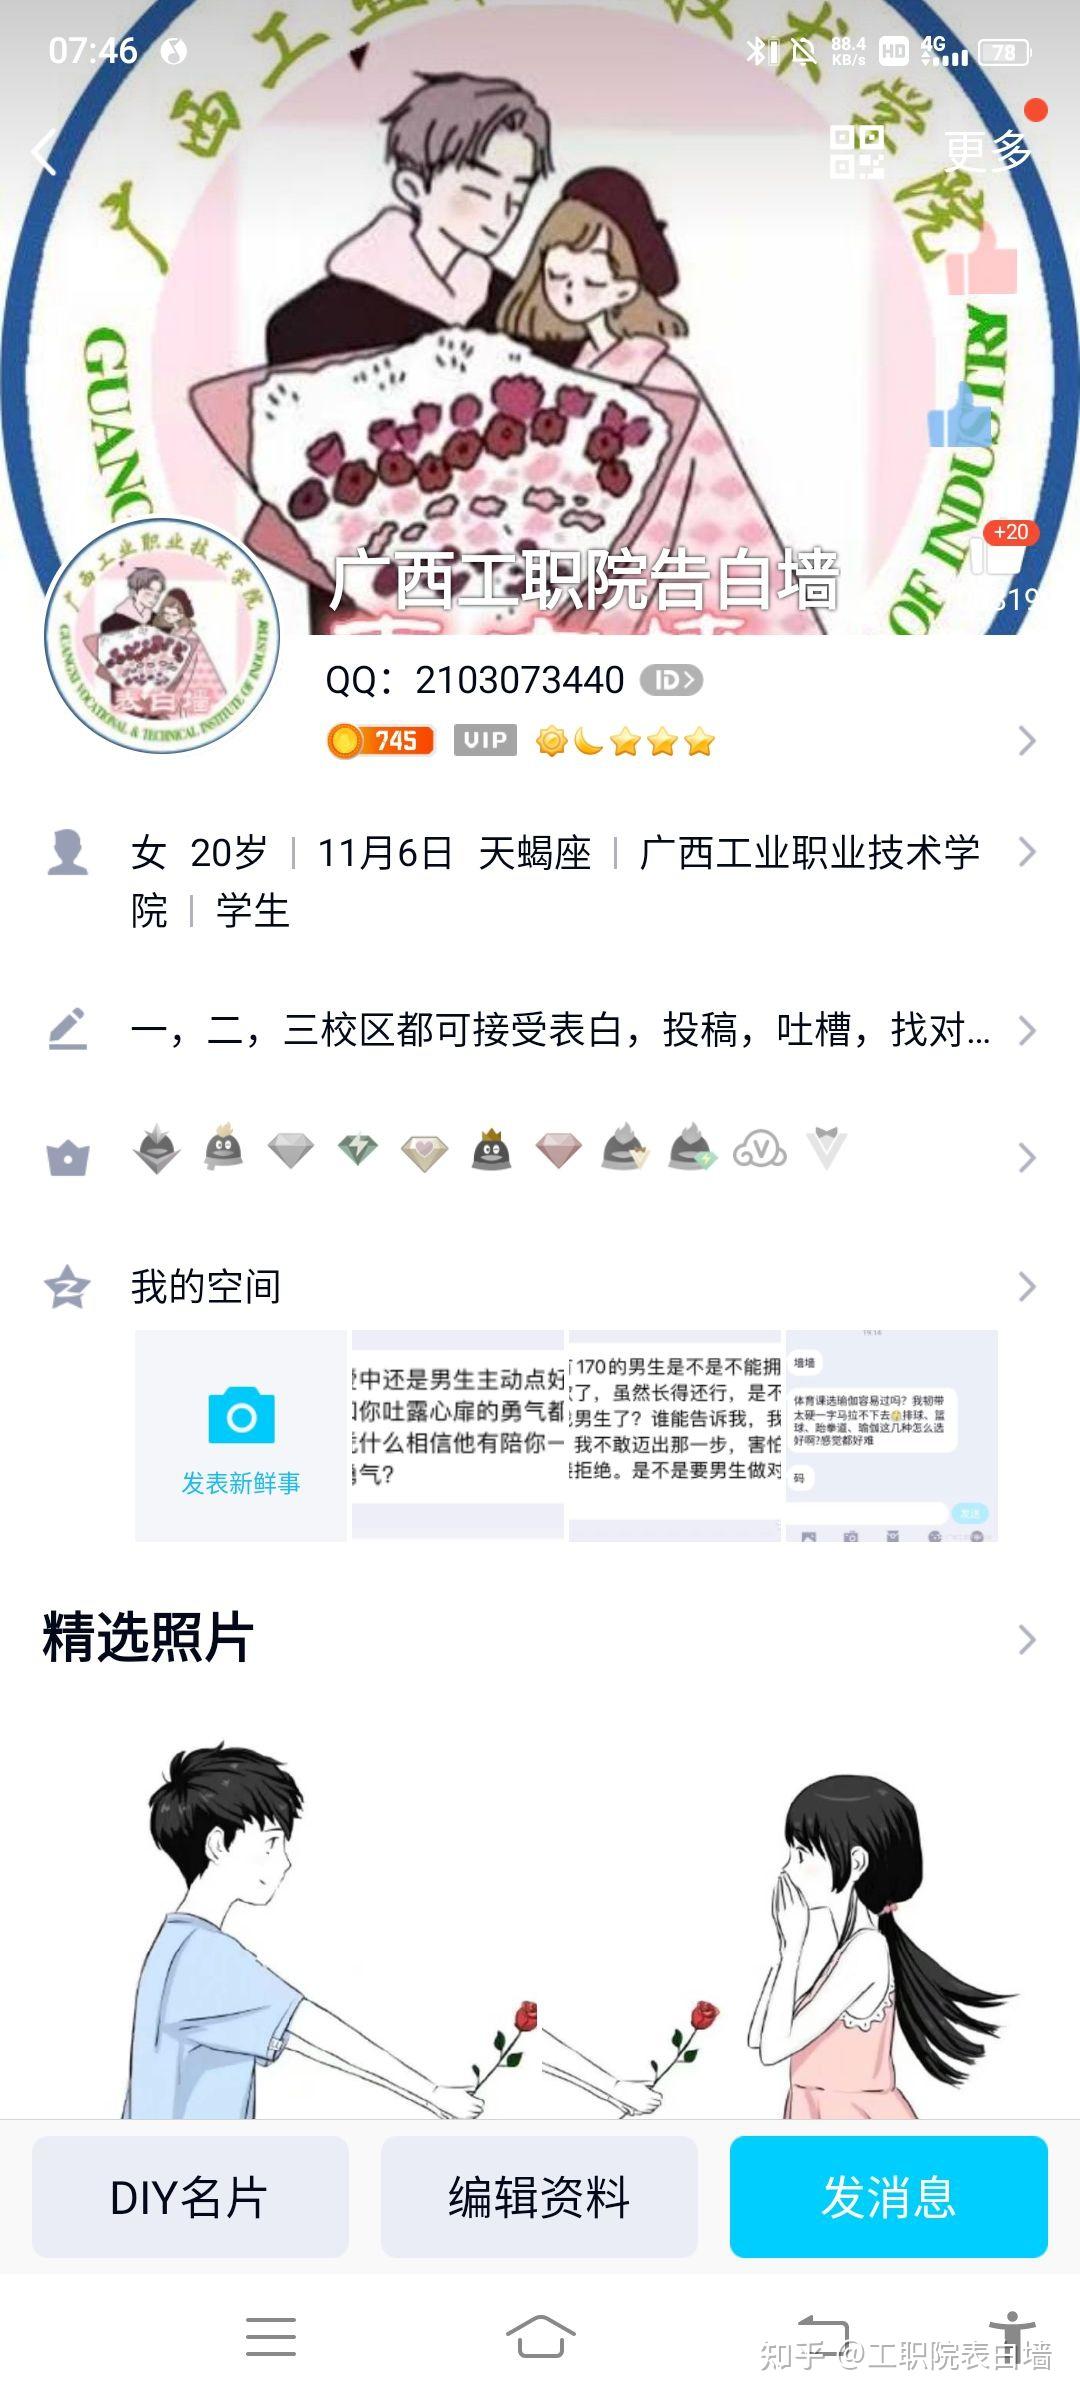 蚌埠工商学院表白墙QQ图片